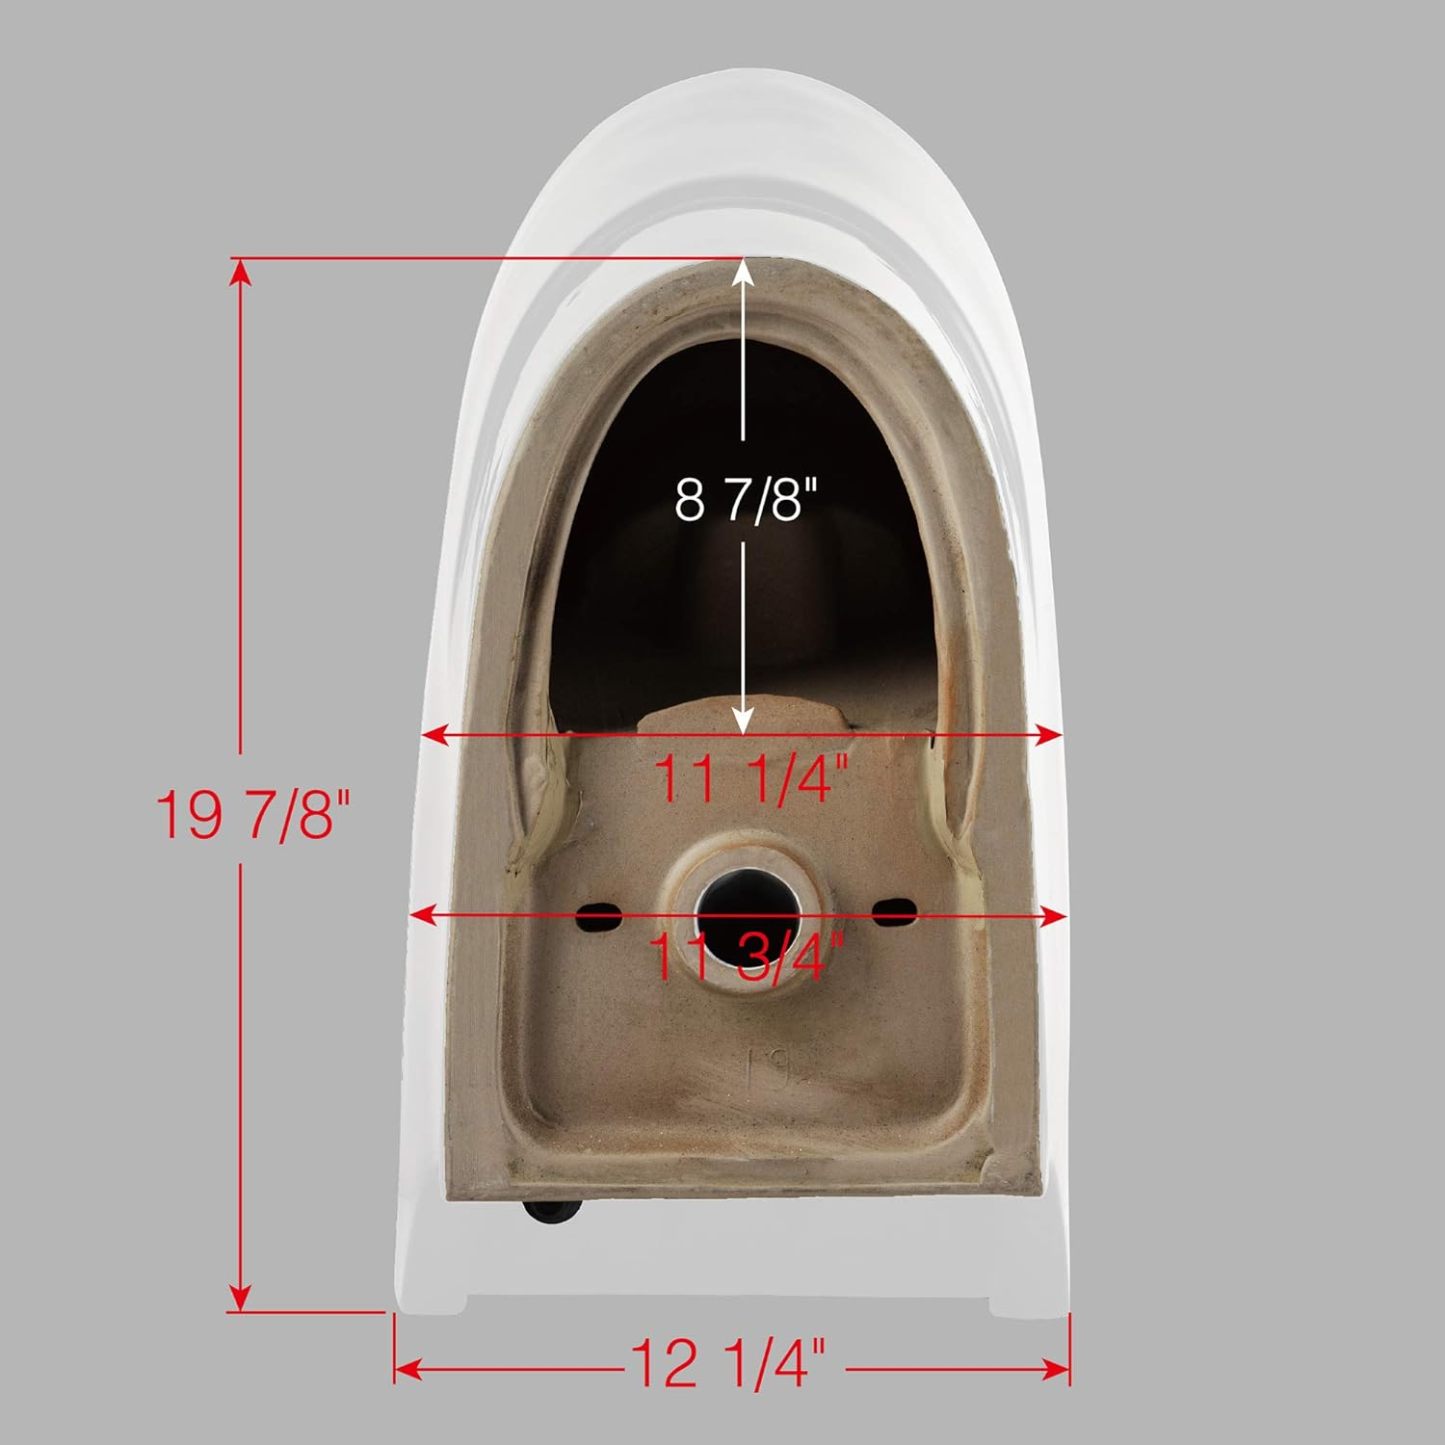 Smart Bidet Toilet T-0737-Arrisea